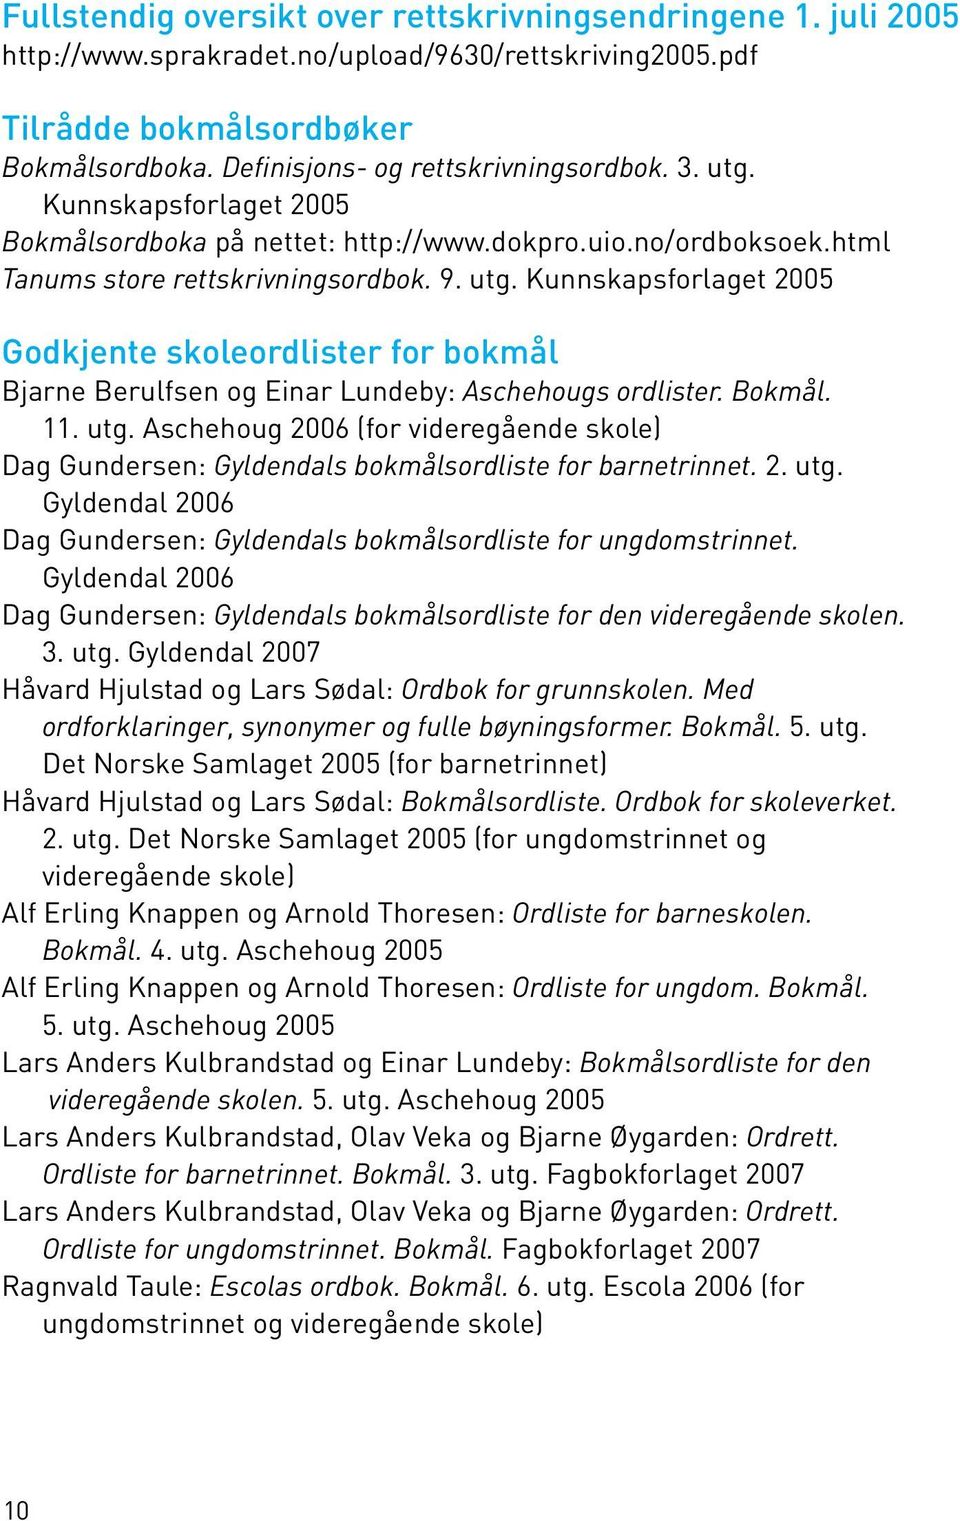 Bokmål. 11. utg. Aschehoug 2006 (for videregående skole) Dag Gundersen: Gyldendals bokmålsordliste for barnetrinnet. 2. utg. Gyldendal 2006 Dag Gundersen: Gyldendals bokmålsordliste for ungdomstrinnet.